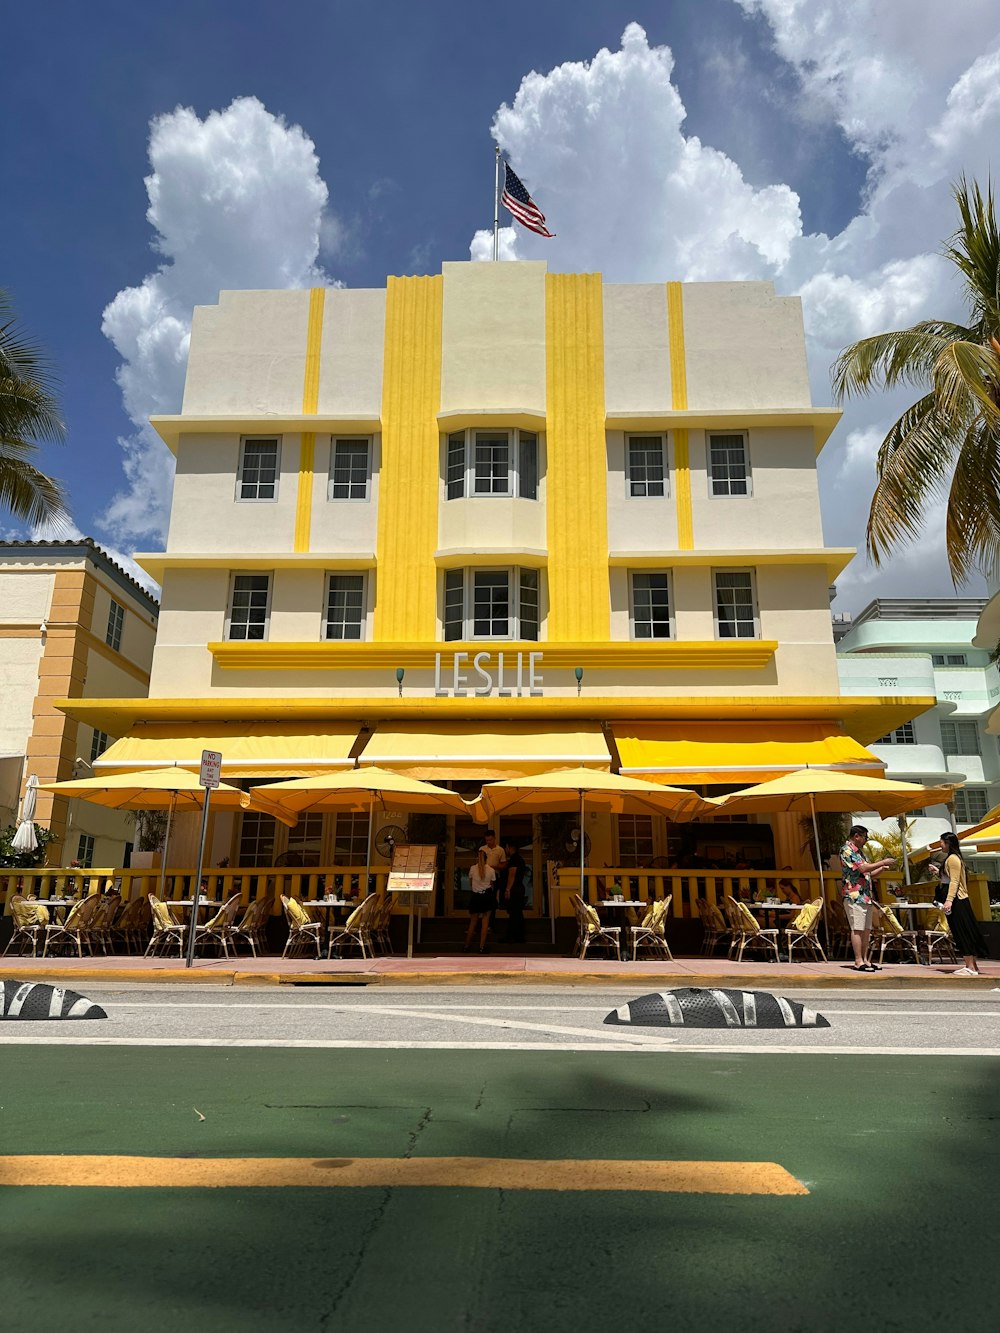 Un edificio amarillo y blanco con una bandera en la parte superior